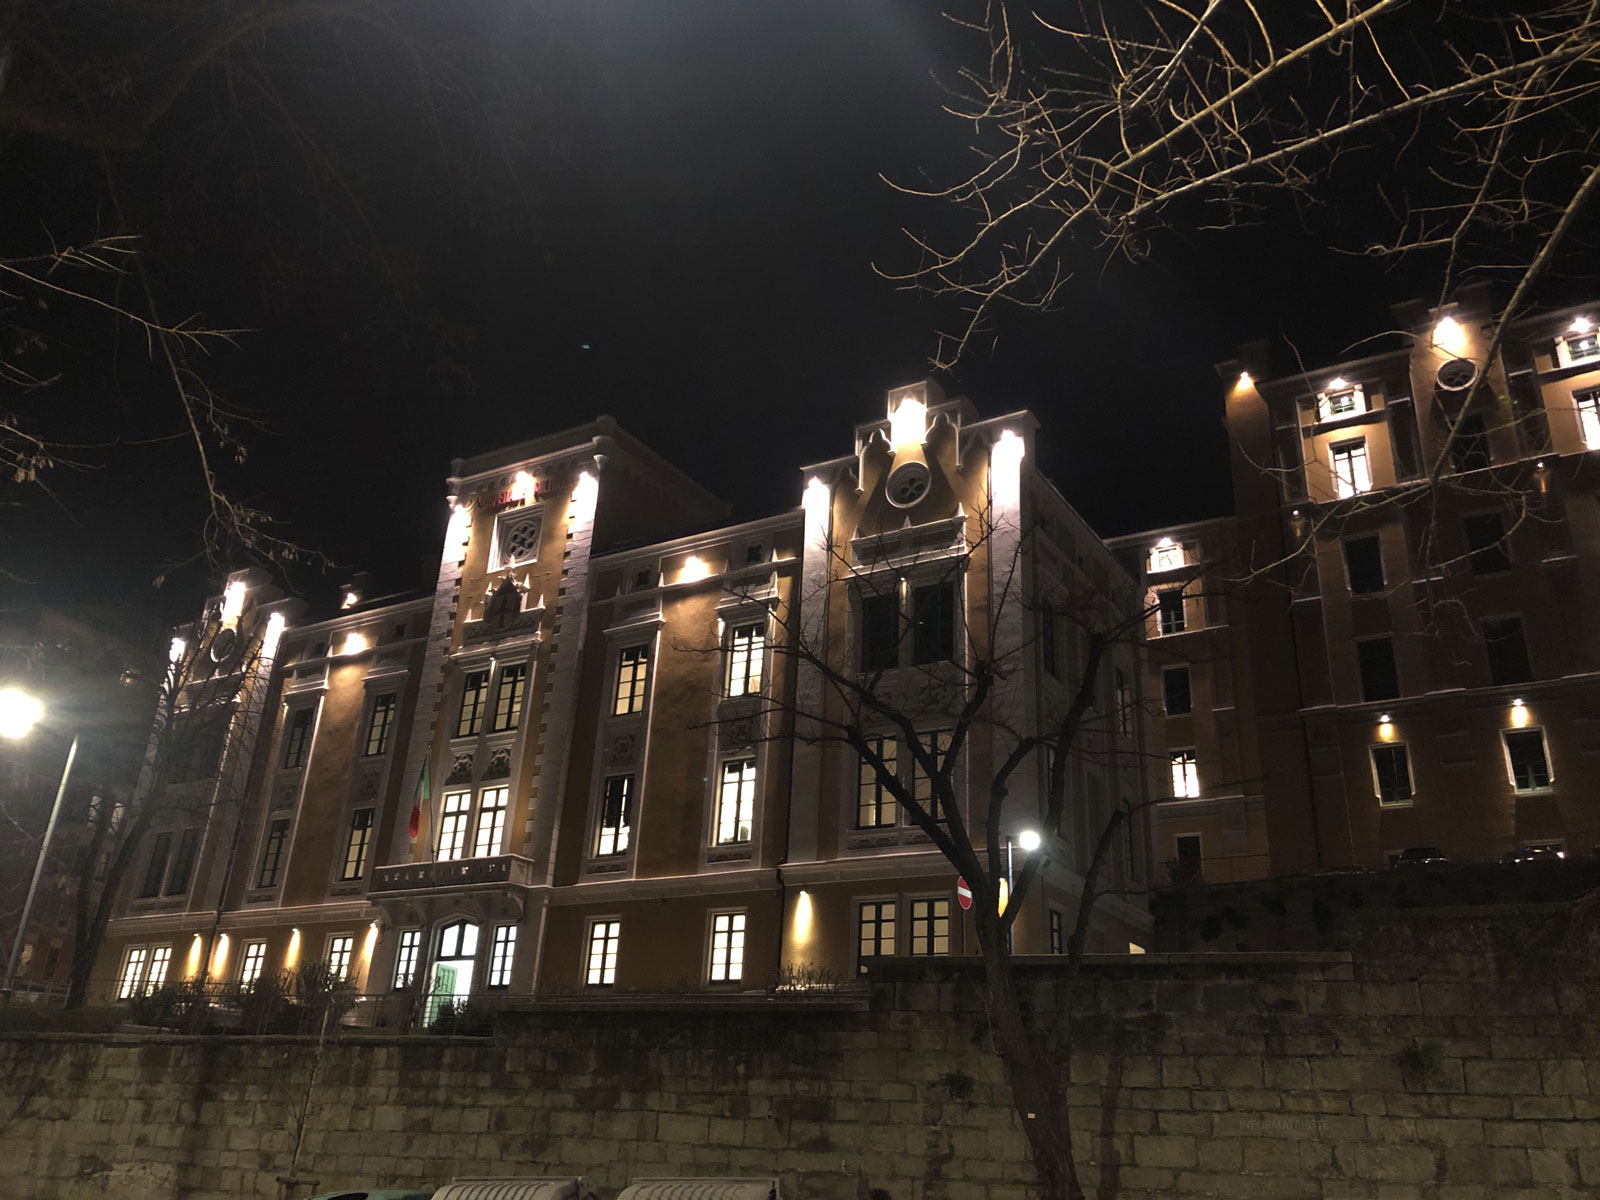 Ex-Ospedale Militare di Trieste via Fabio Severo, by night - Febbraio 2020